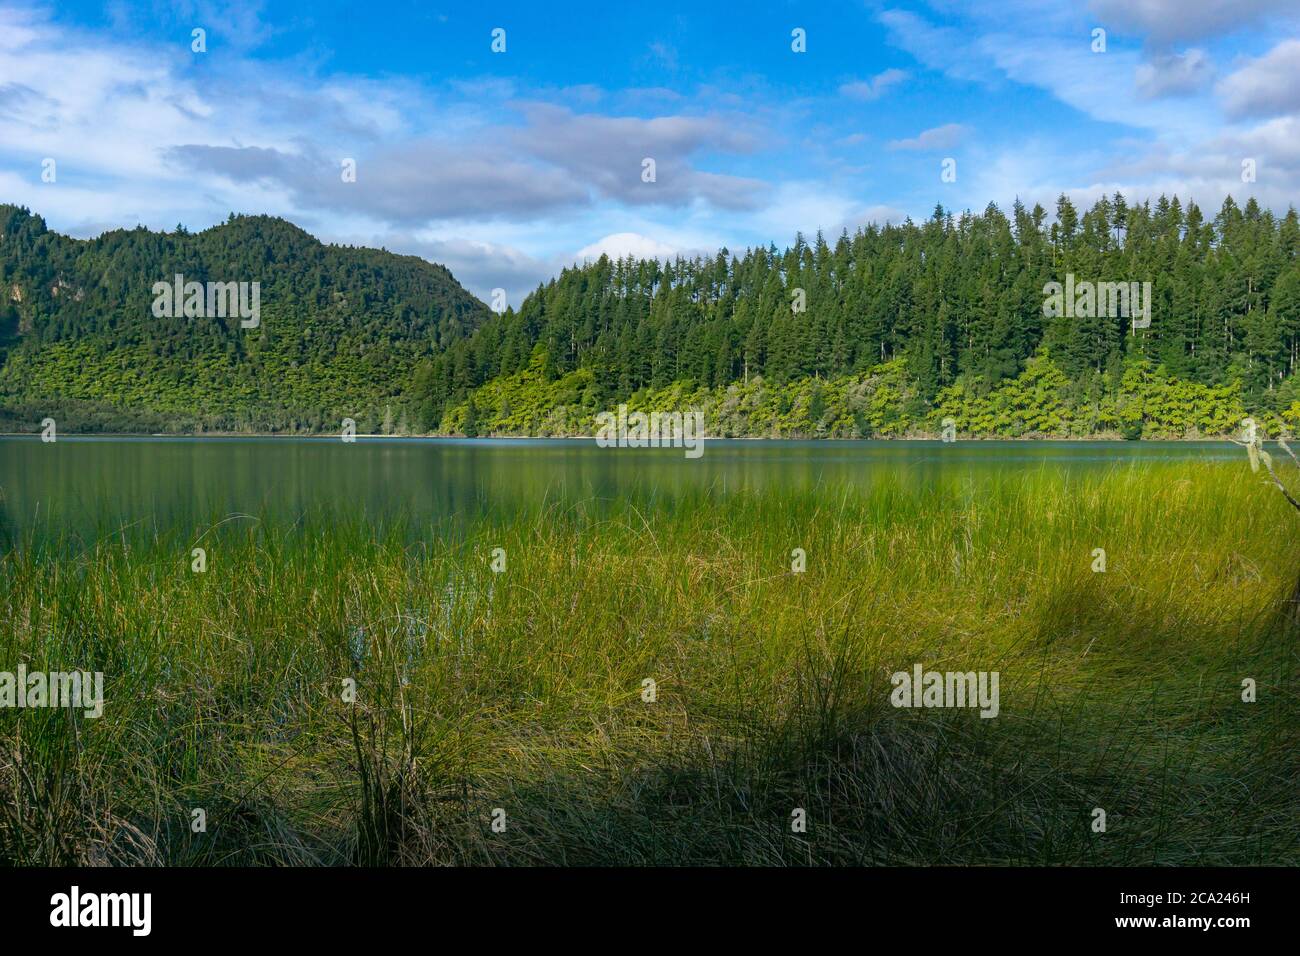 Vue sur le lac Blue sur les roseaux en bordure des fougères d'arbres bordant l'autre côté et des pins de plantation derrière. Banque D'Images